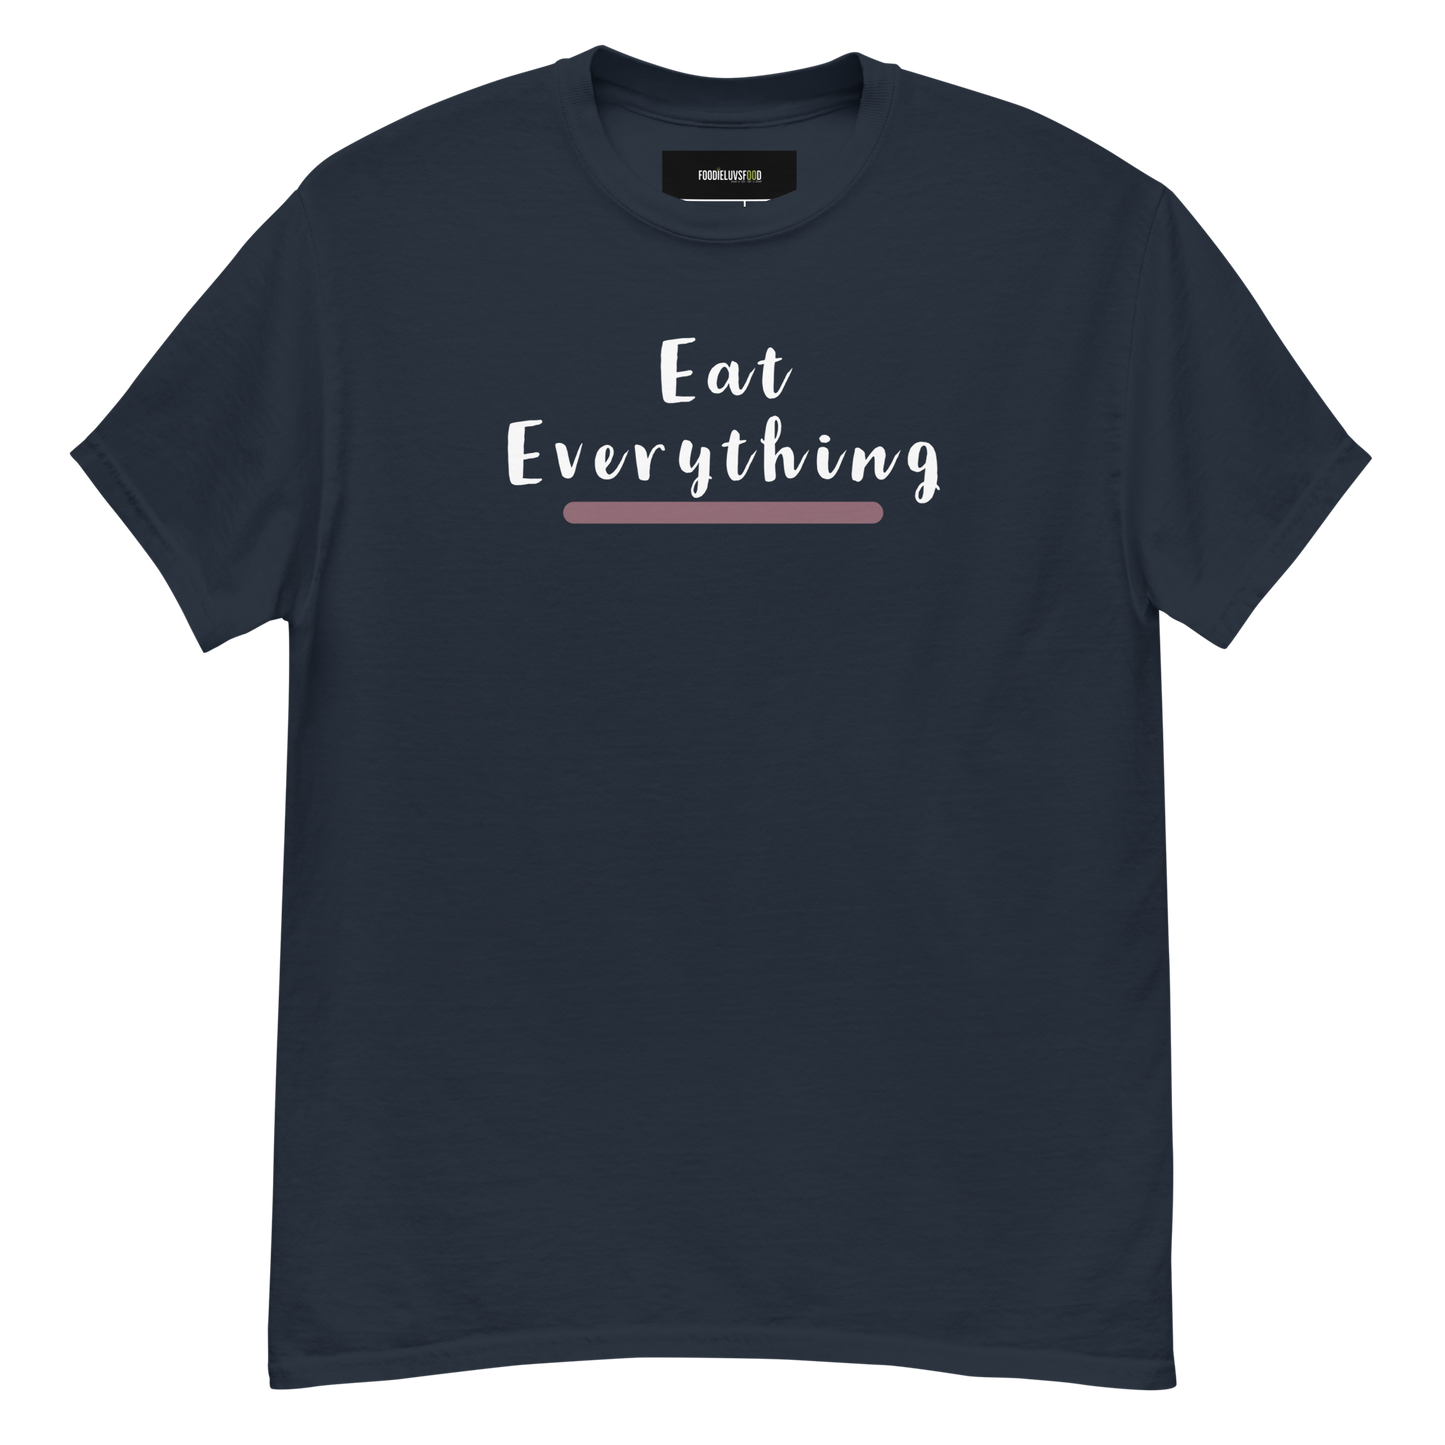 “Eat Everything” Unisex Classic T-Shirt